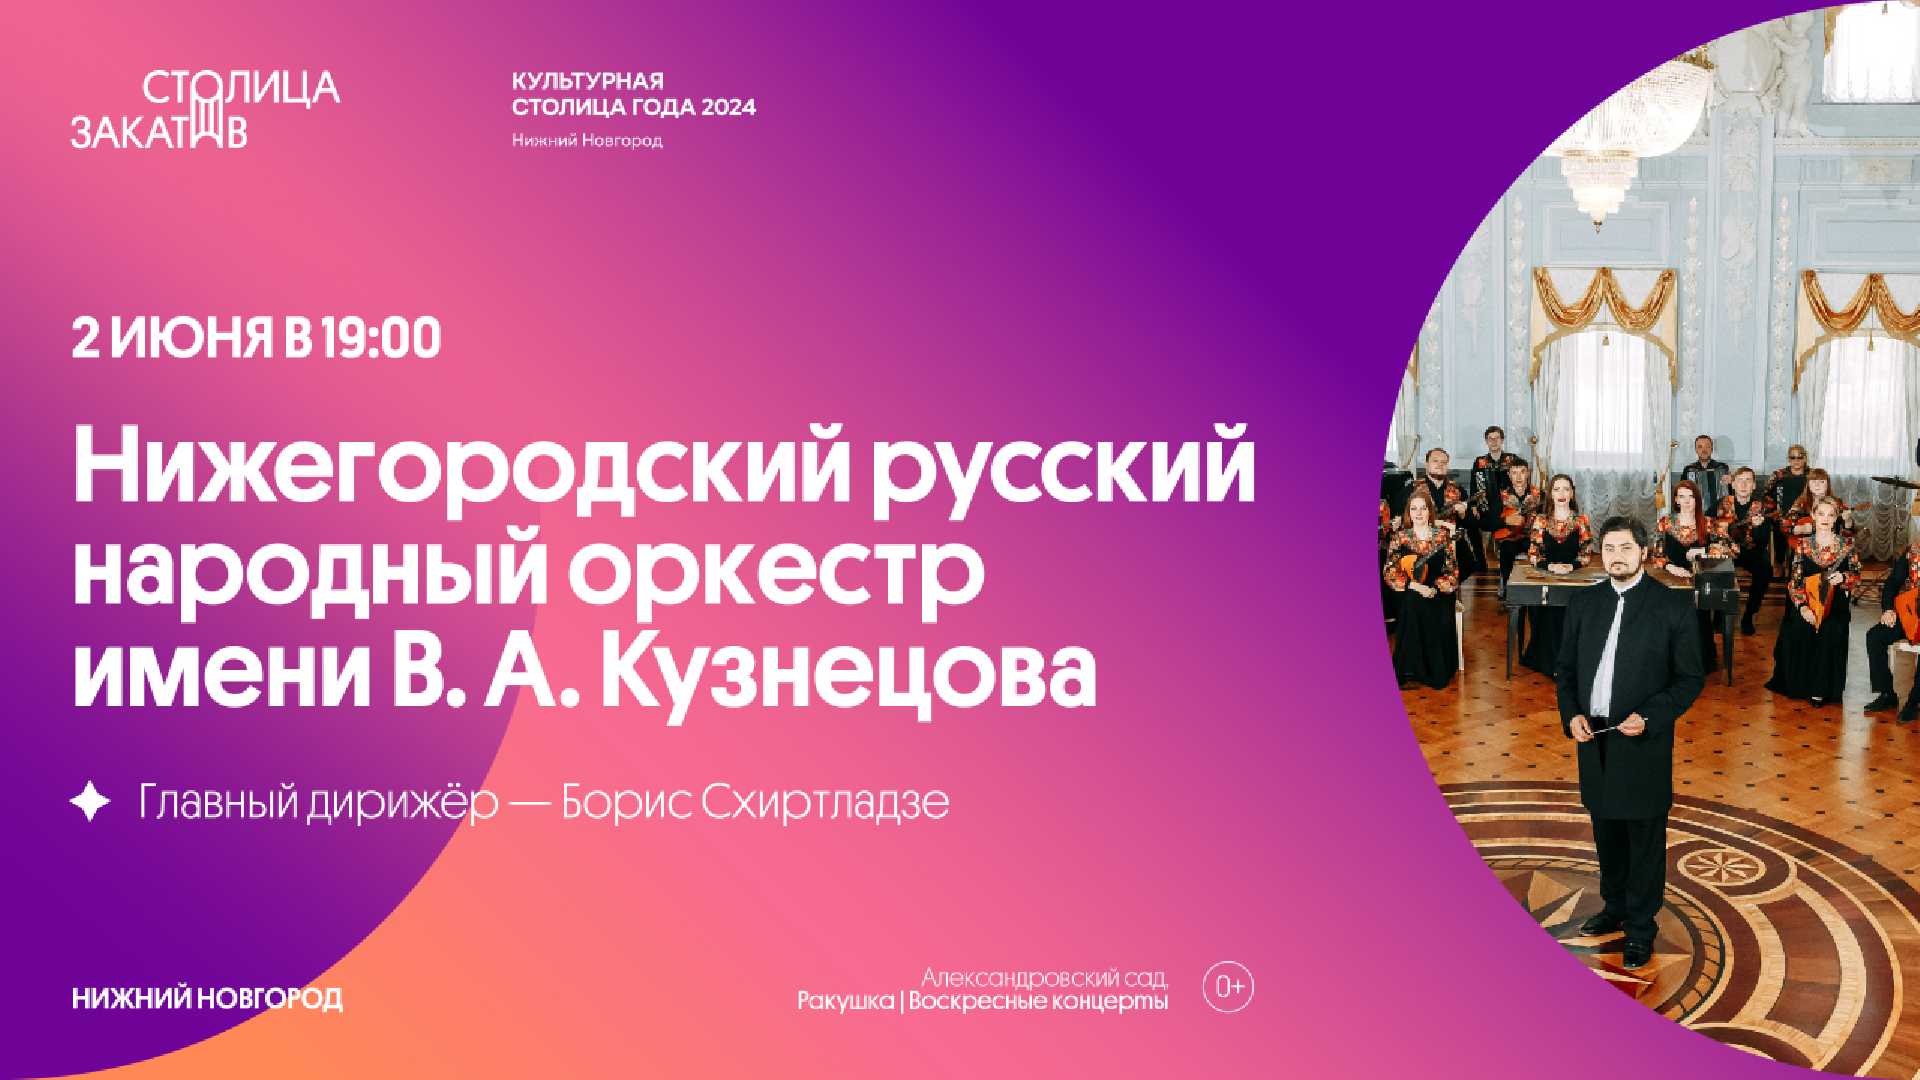 nizhegorodsky-russky-narodny-orkestr-im-va-kuznetsova-2